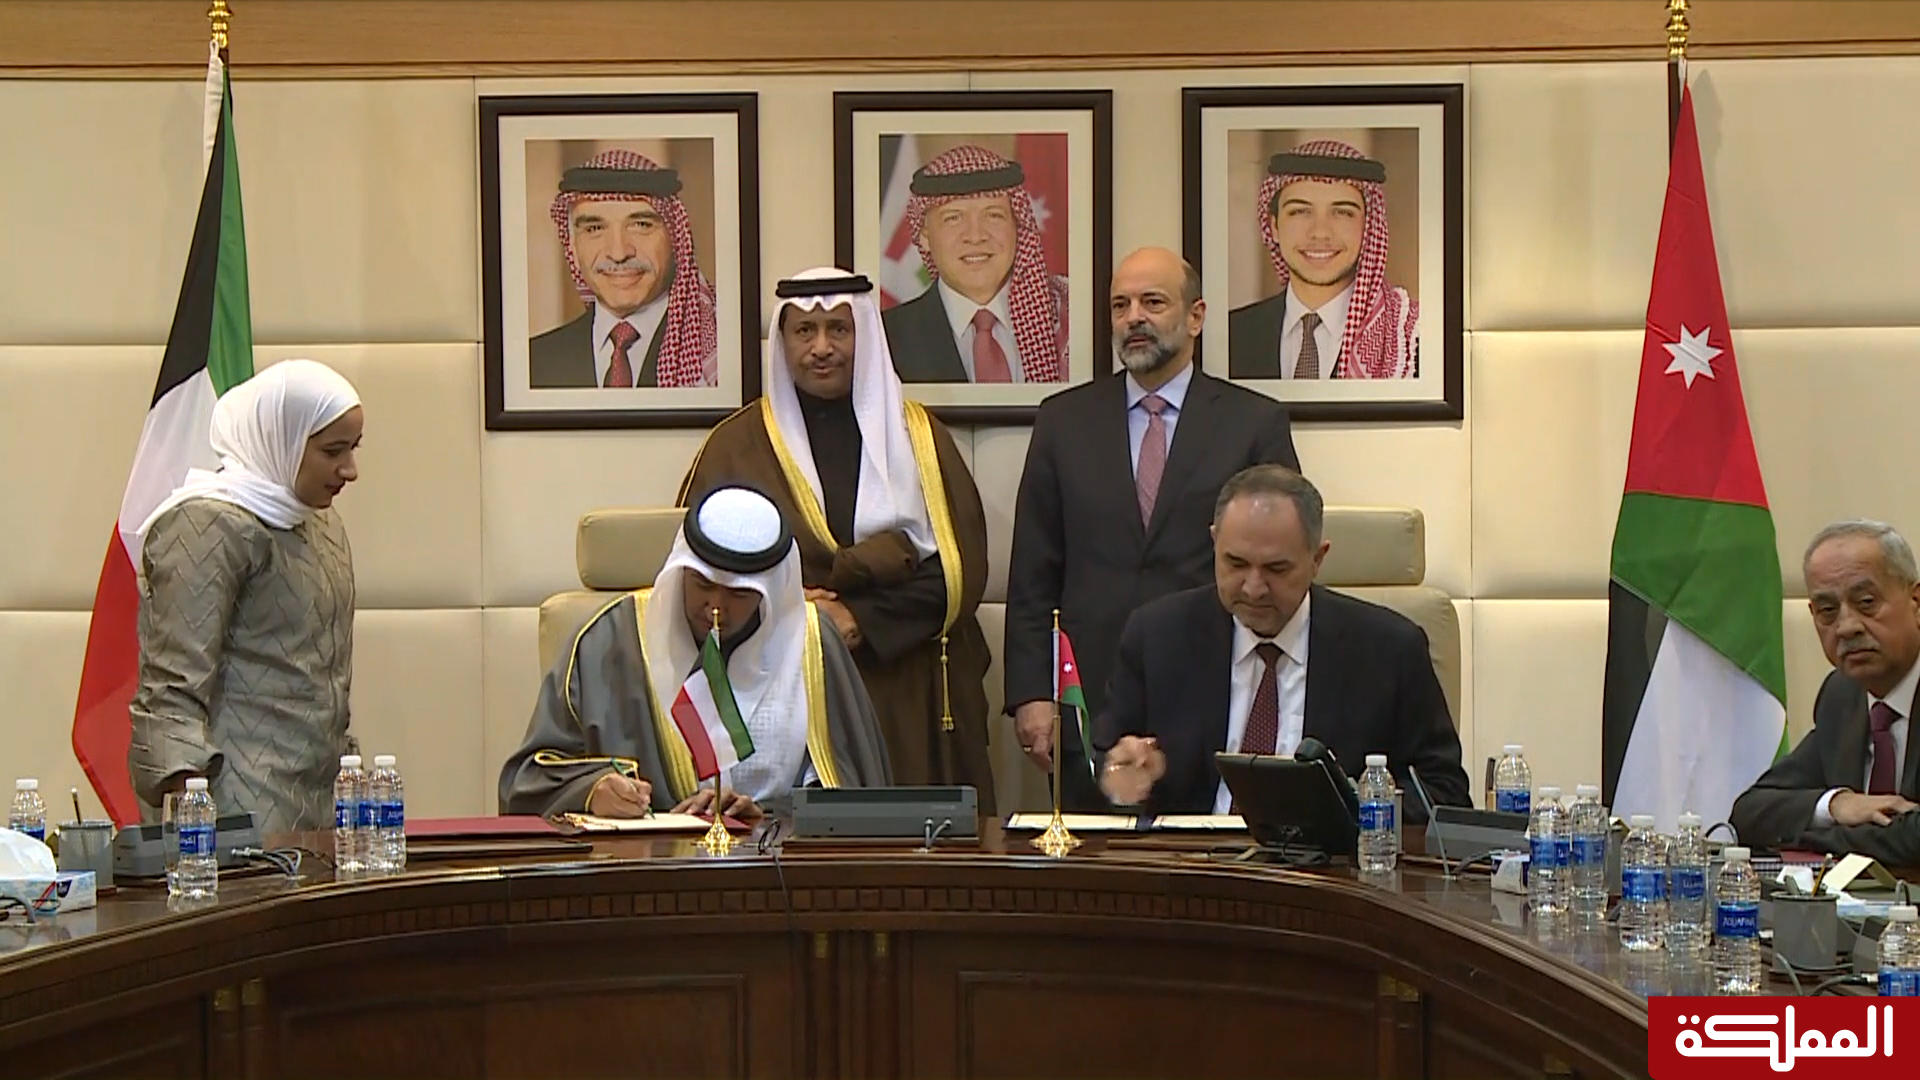 توقيع اتفاقيات بين الأردن والكويت في رئاسة الوزراء